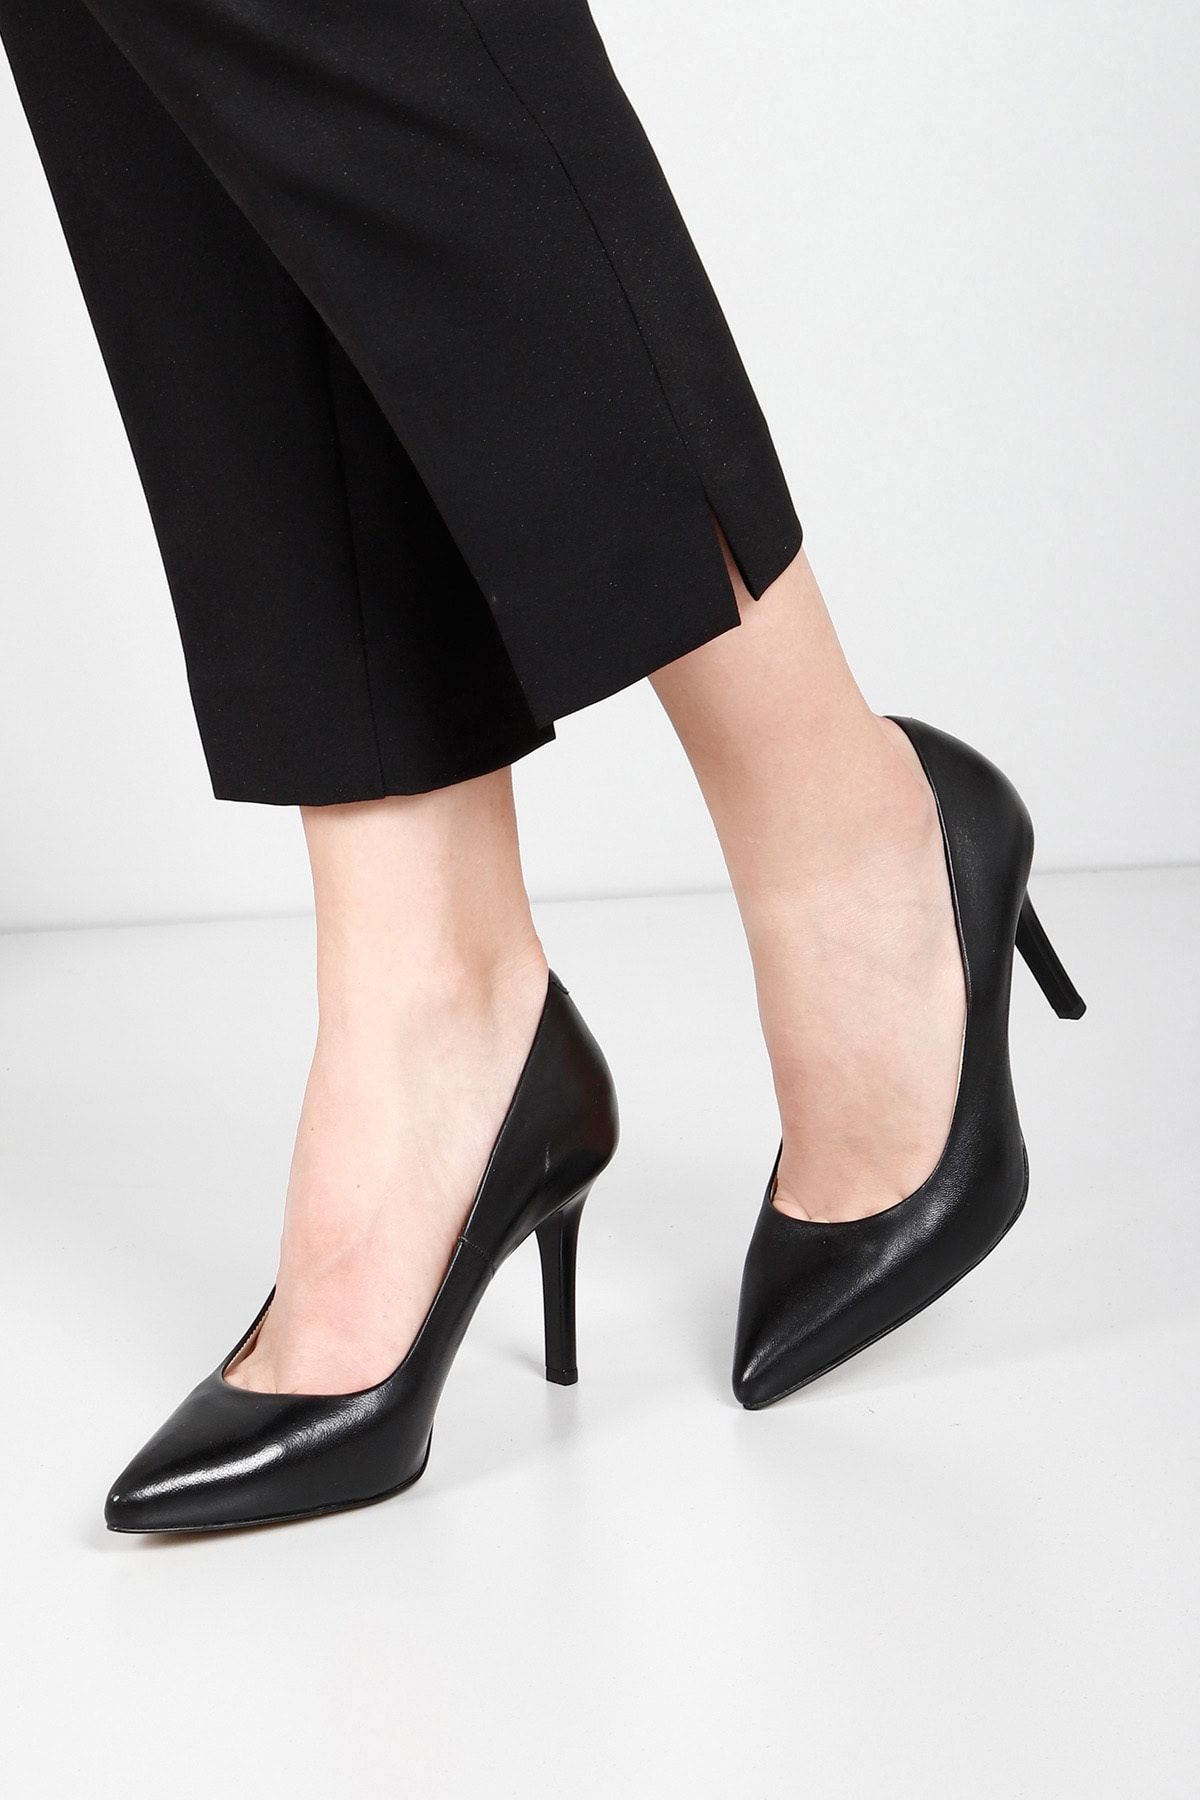 GÖNDERİ(R) Siyah Gön Hakiki Deri Sivri Burun Yüksek Ince Topuklu Stiletto Kadın Ayakkabı 24127